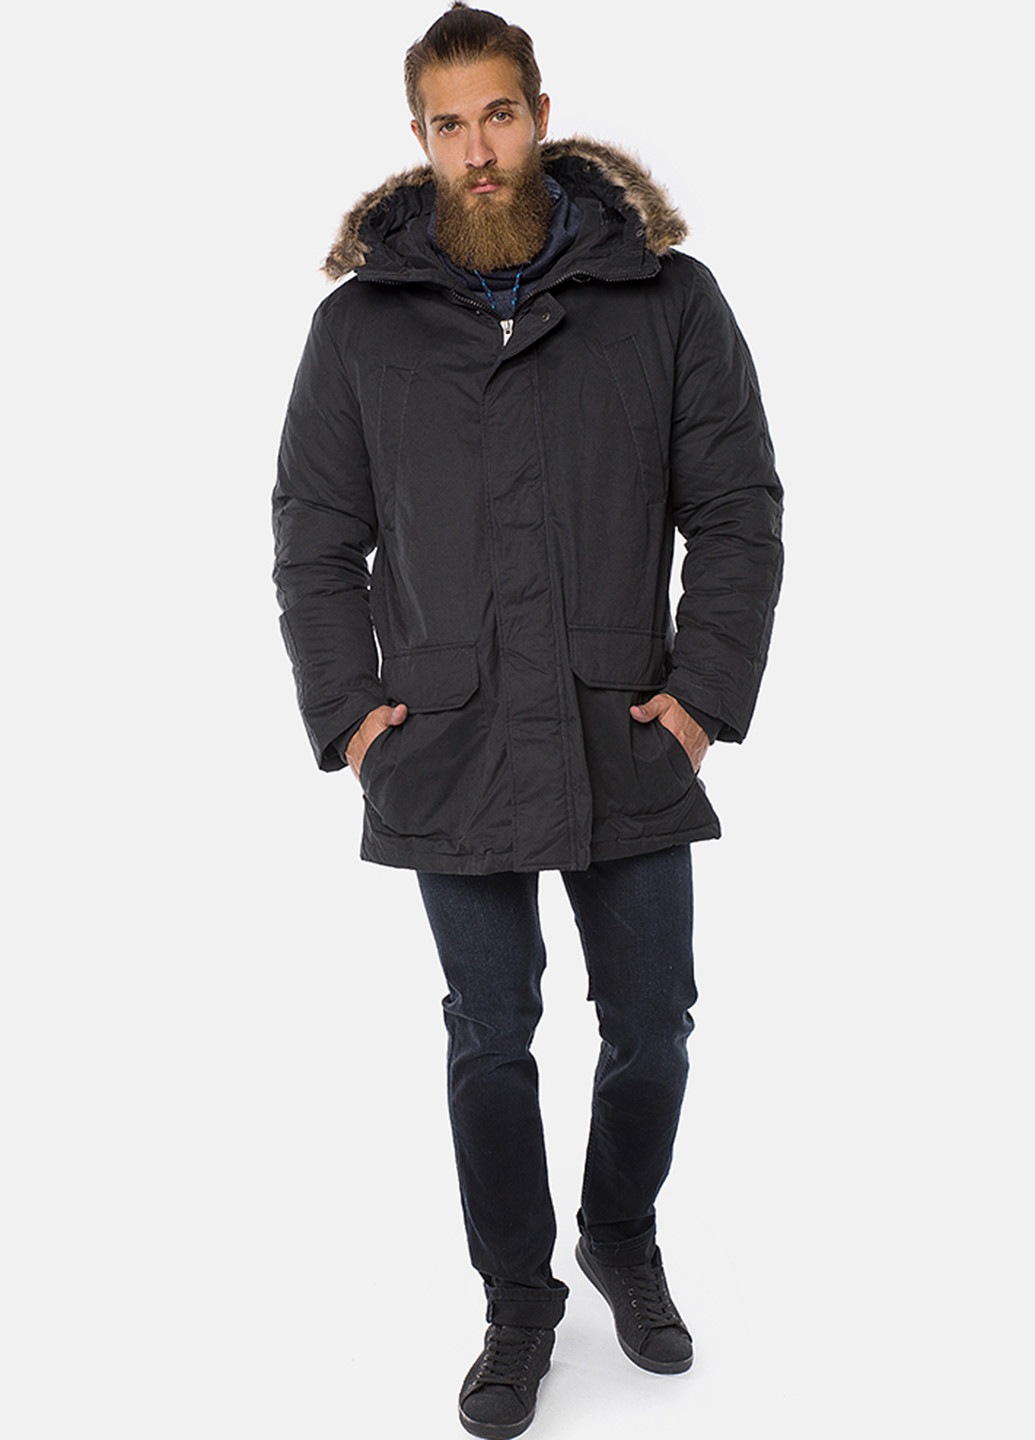 Темно-синяя зимняя куртка MR 520